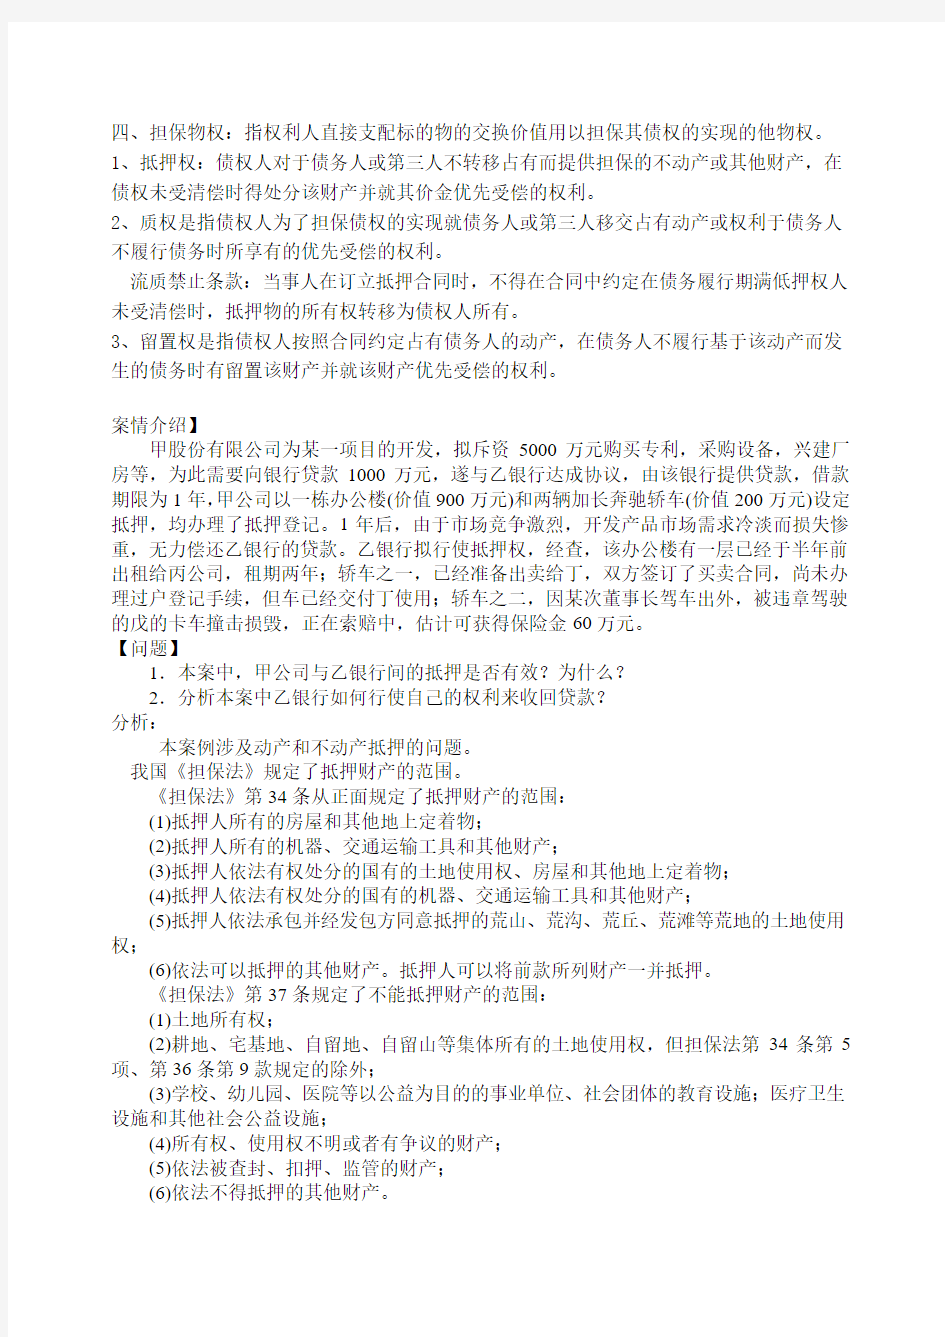 物权法知识学习内容2014.2.18